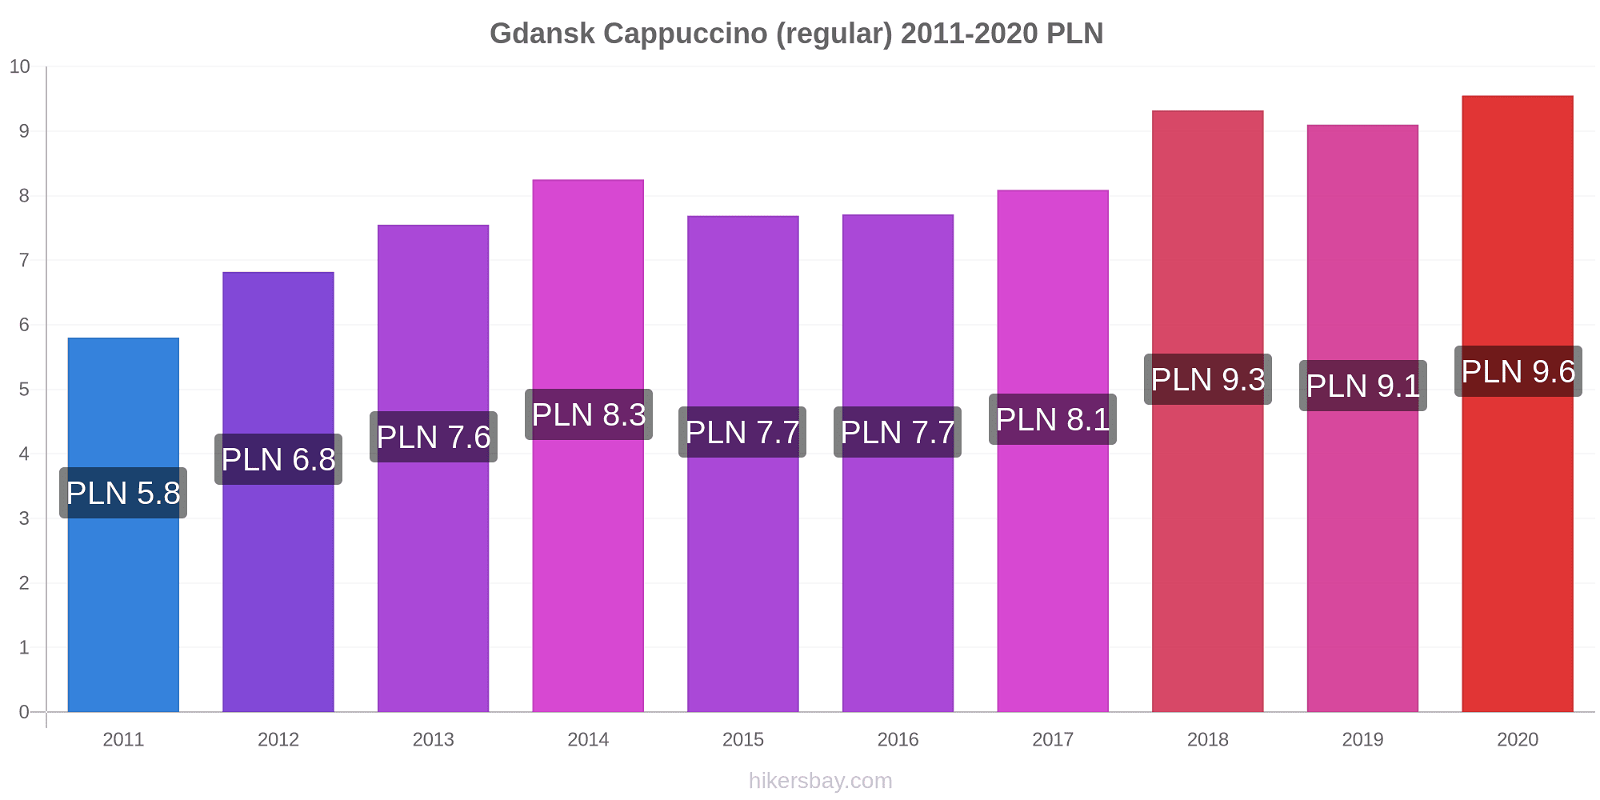 Gdansk price changes Cappuccino (regular) hikersbay.com